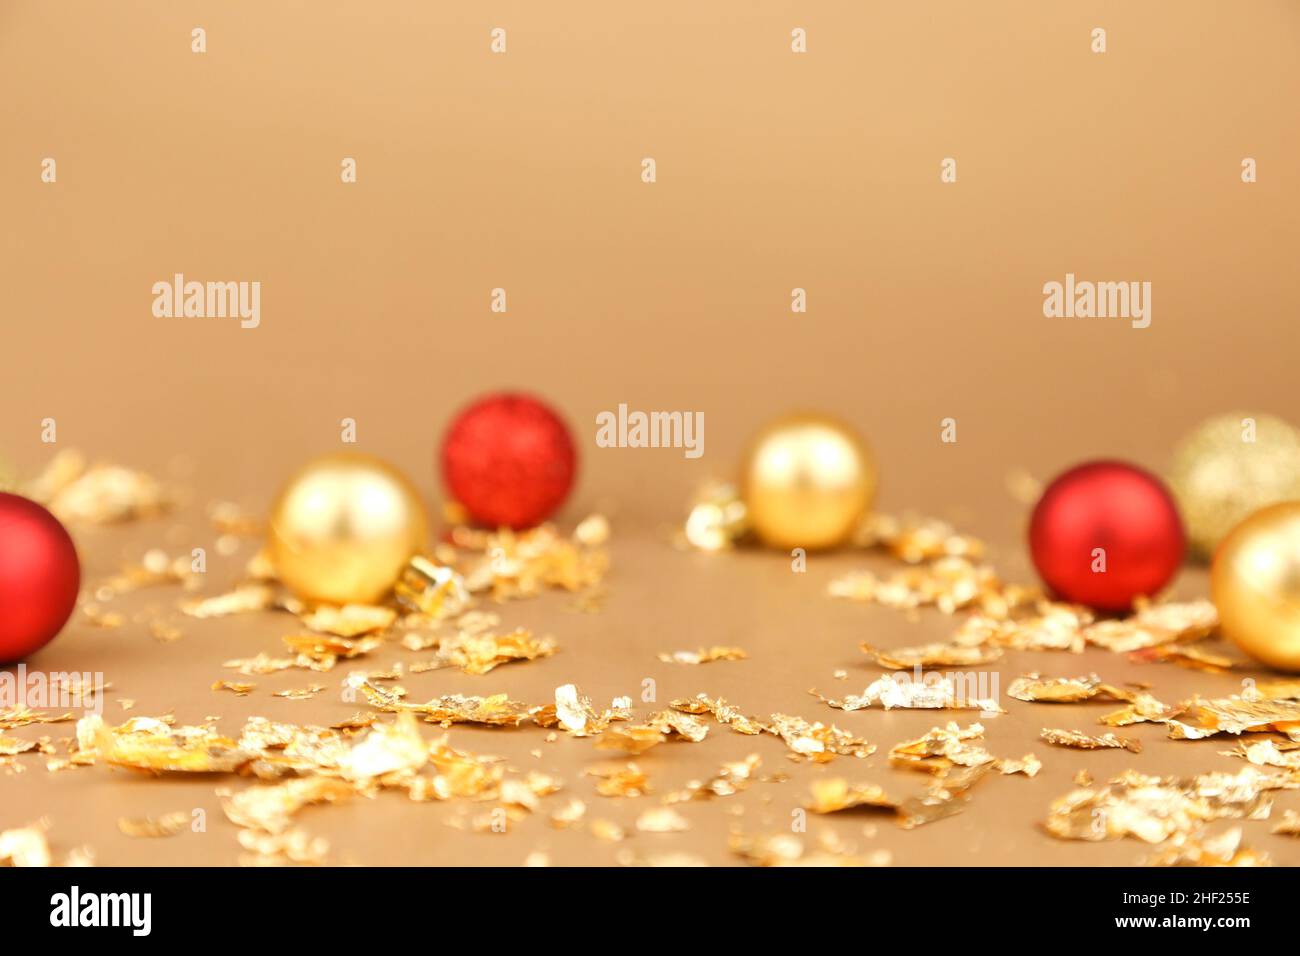 Hintergrund der Werbung für Kosmetikprodukte. Rote und goldene weihnachtskugeln und goldene Papierfeuerungen auf goldenem Hintergrund. Leerer Ort zum Anzeigen Stockfoto